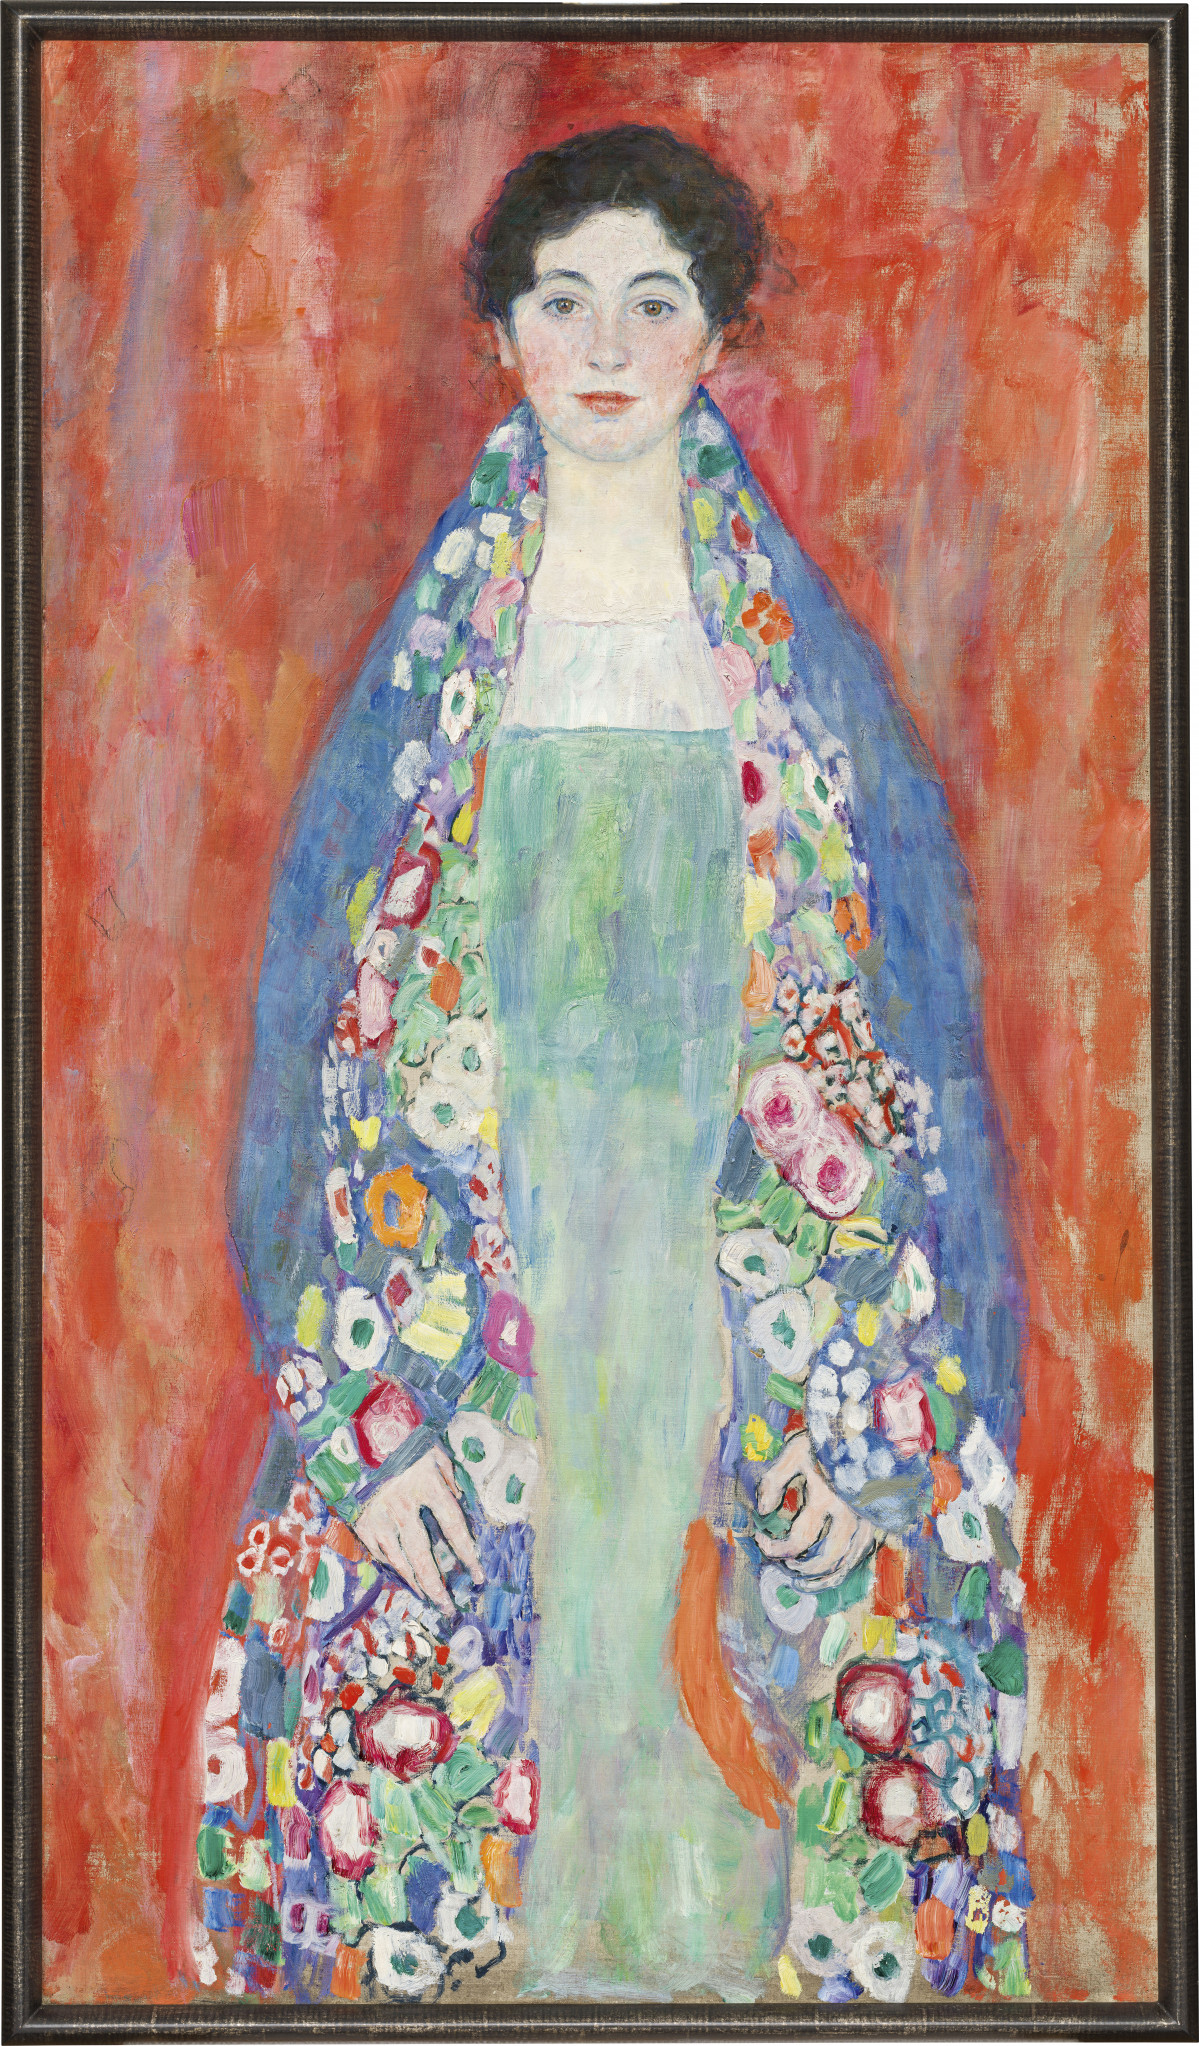 Retrato de la seu00f1orita Lieser de Klimt @ EFE